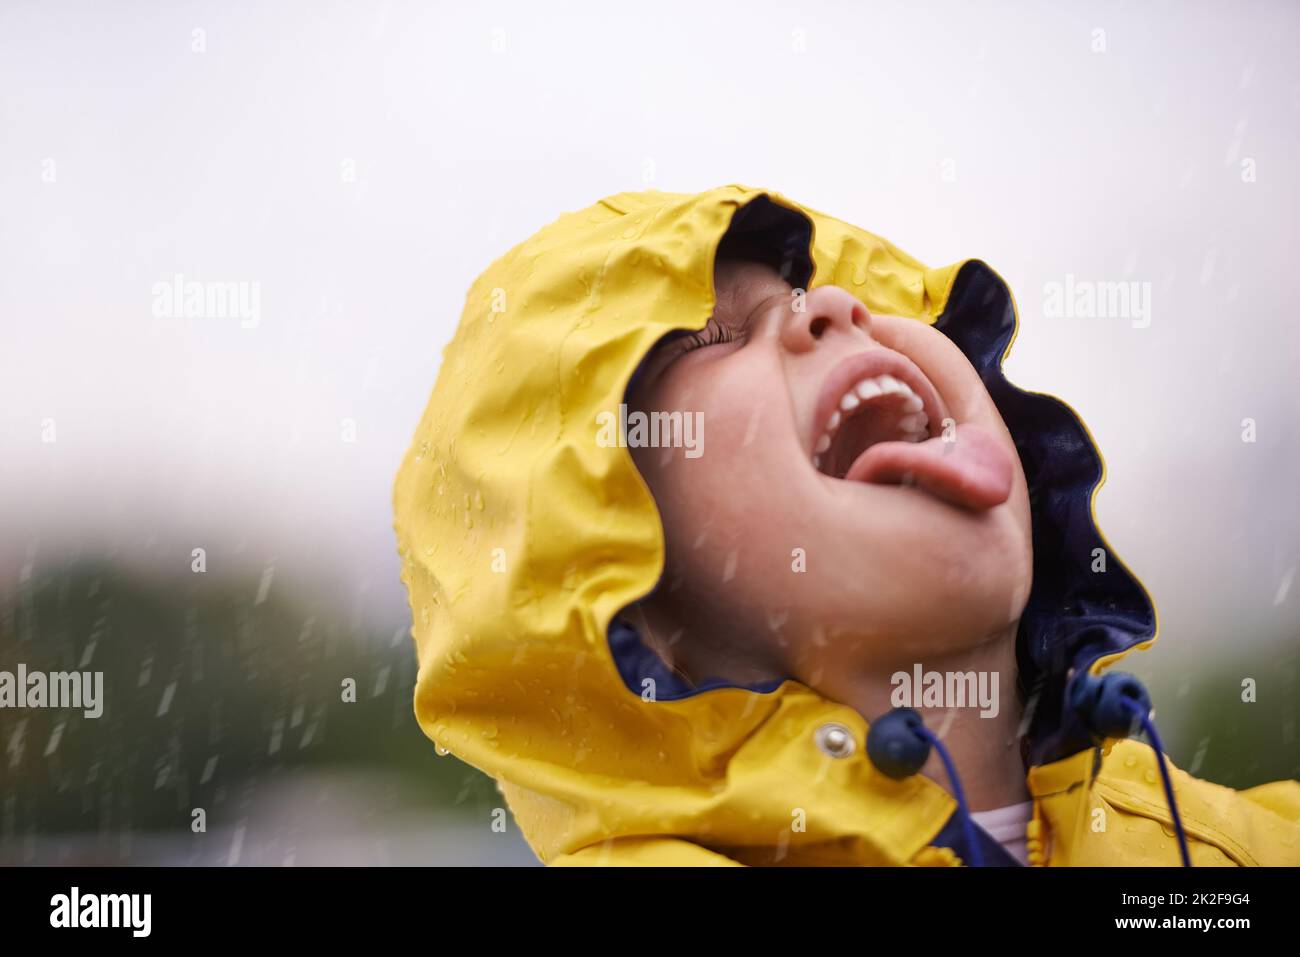 Reine Freude. Ein entzückendes kleines Mädchen, das draußen im Regen spielt. Stockfoto